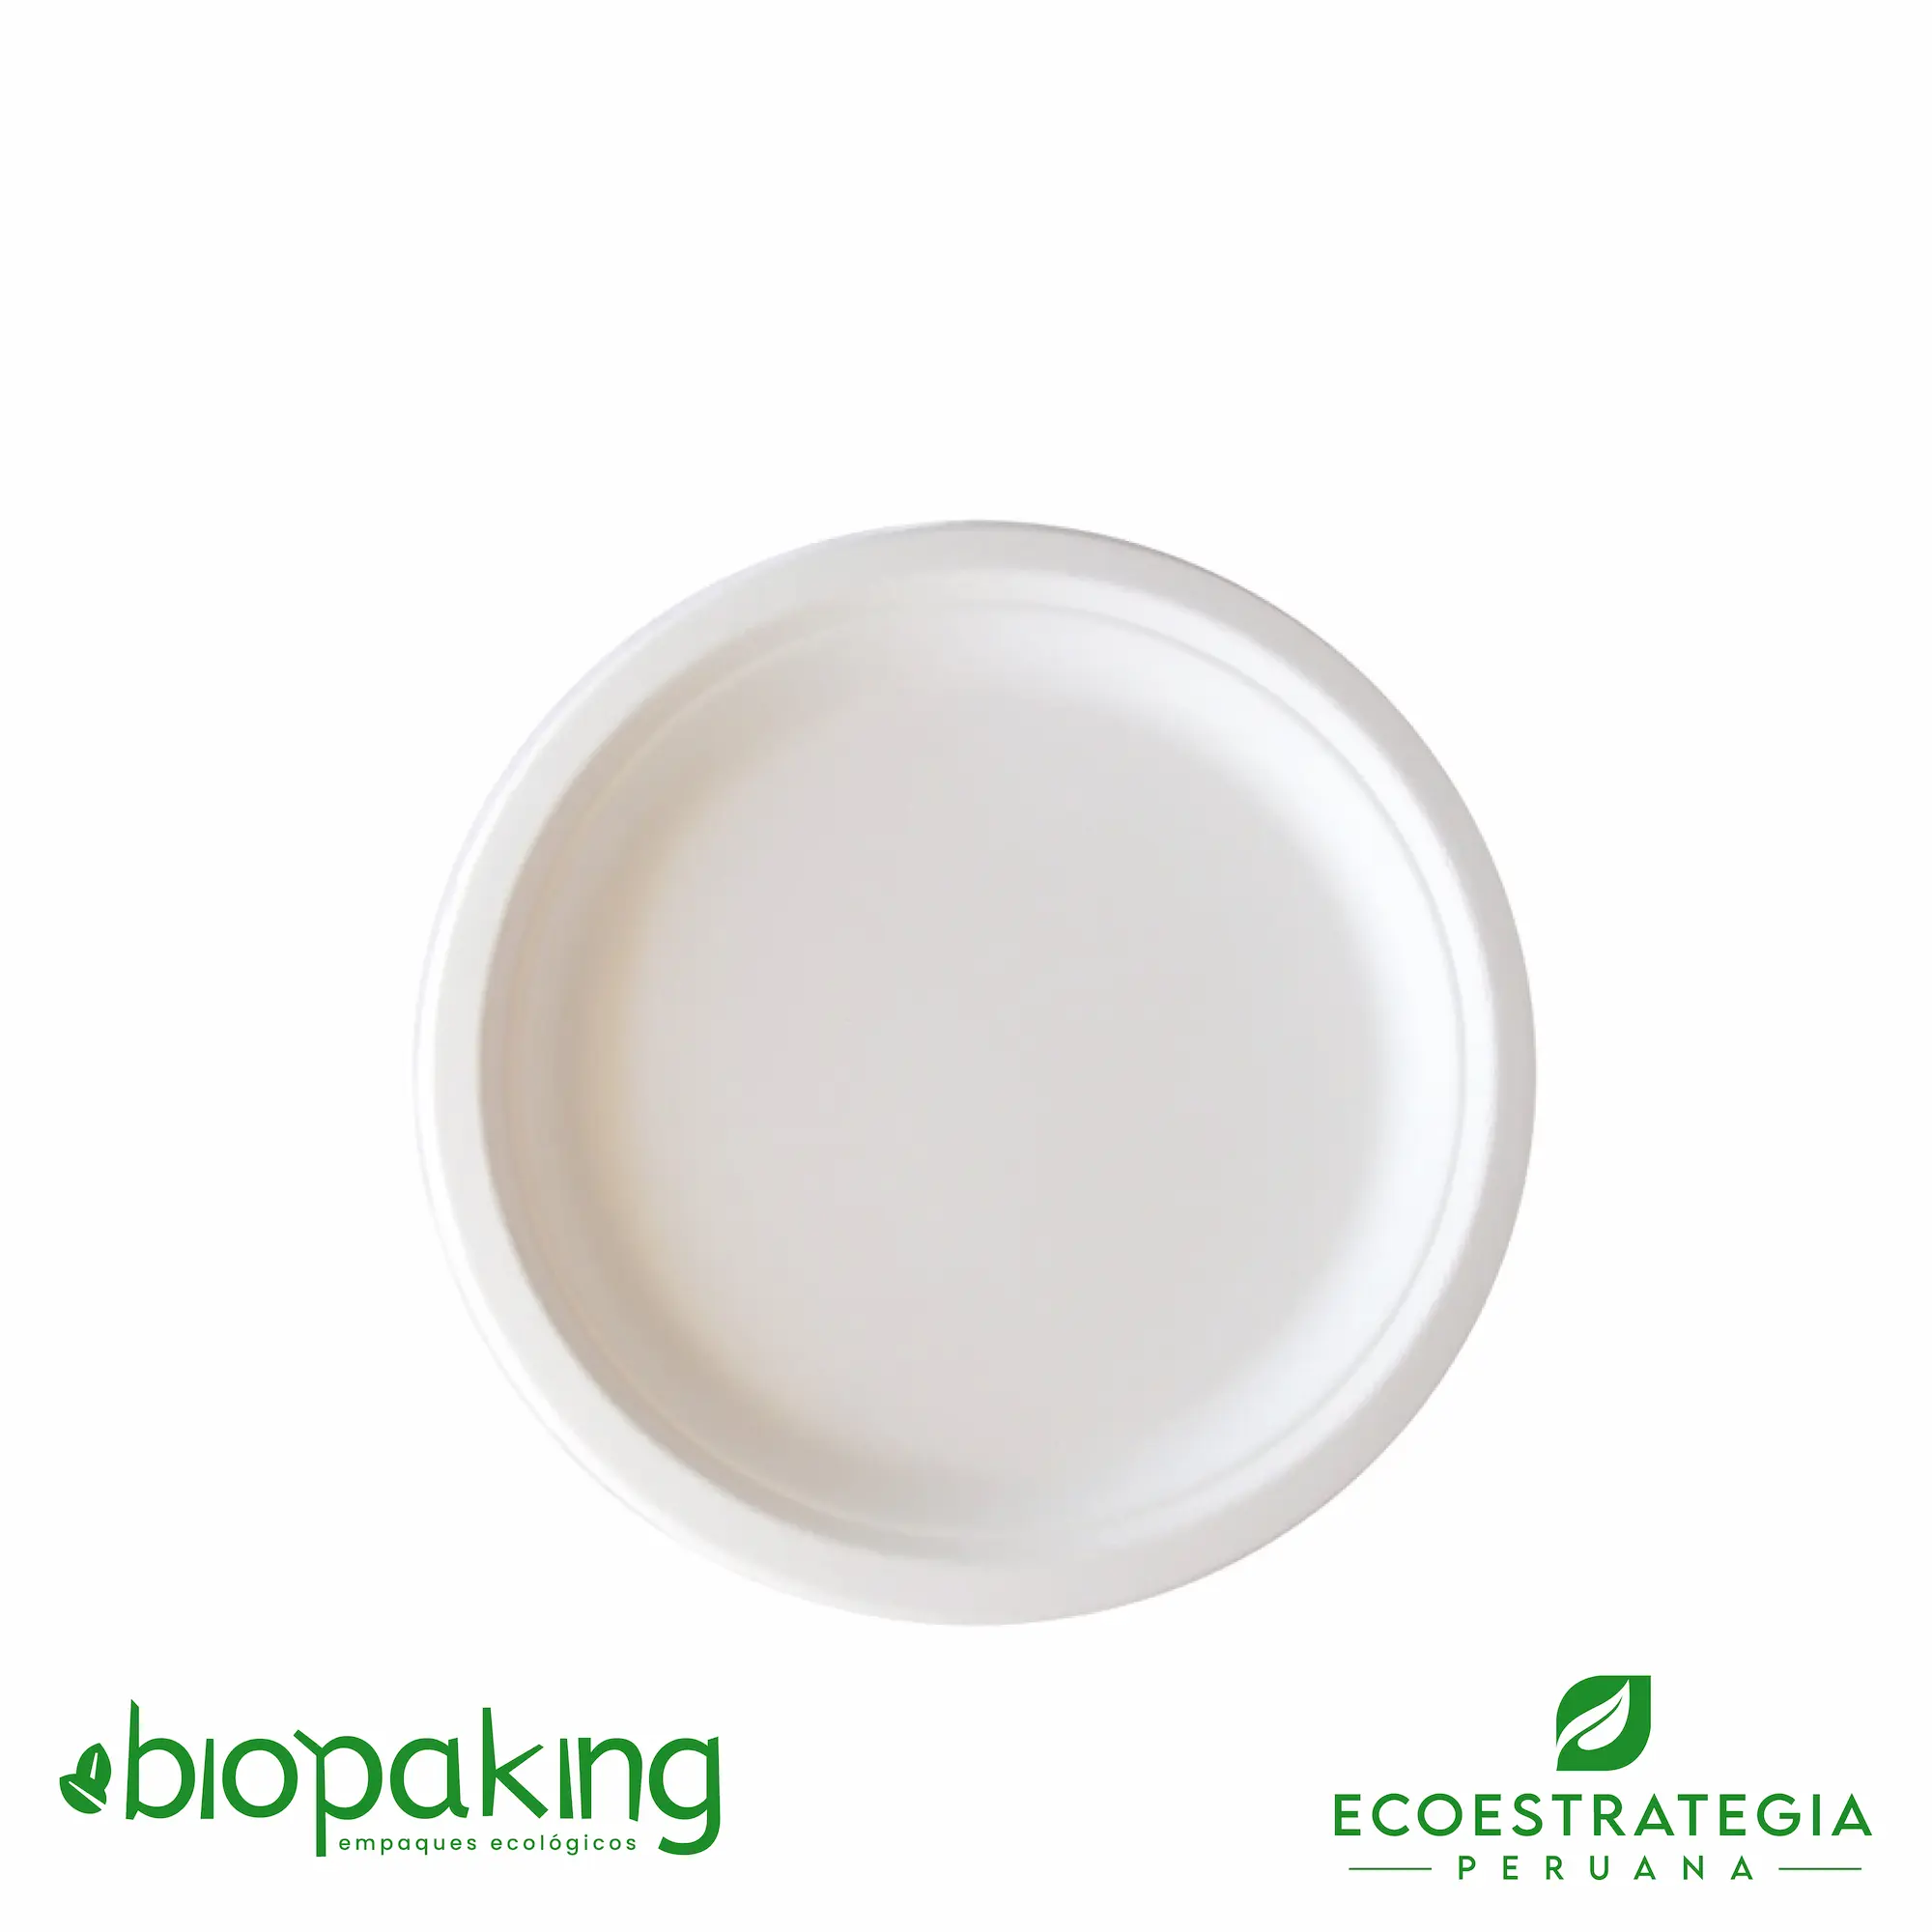 Este plato de 22cm está hecho a base del bagazo de caña de azúcar. Producto de materiales biodegradables. Cotiza tus tapers y envases ecológicos y descartables.